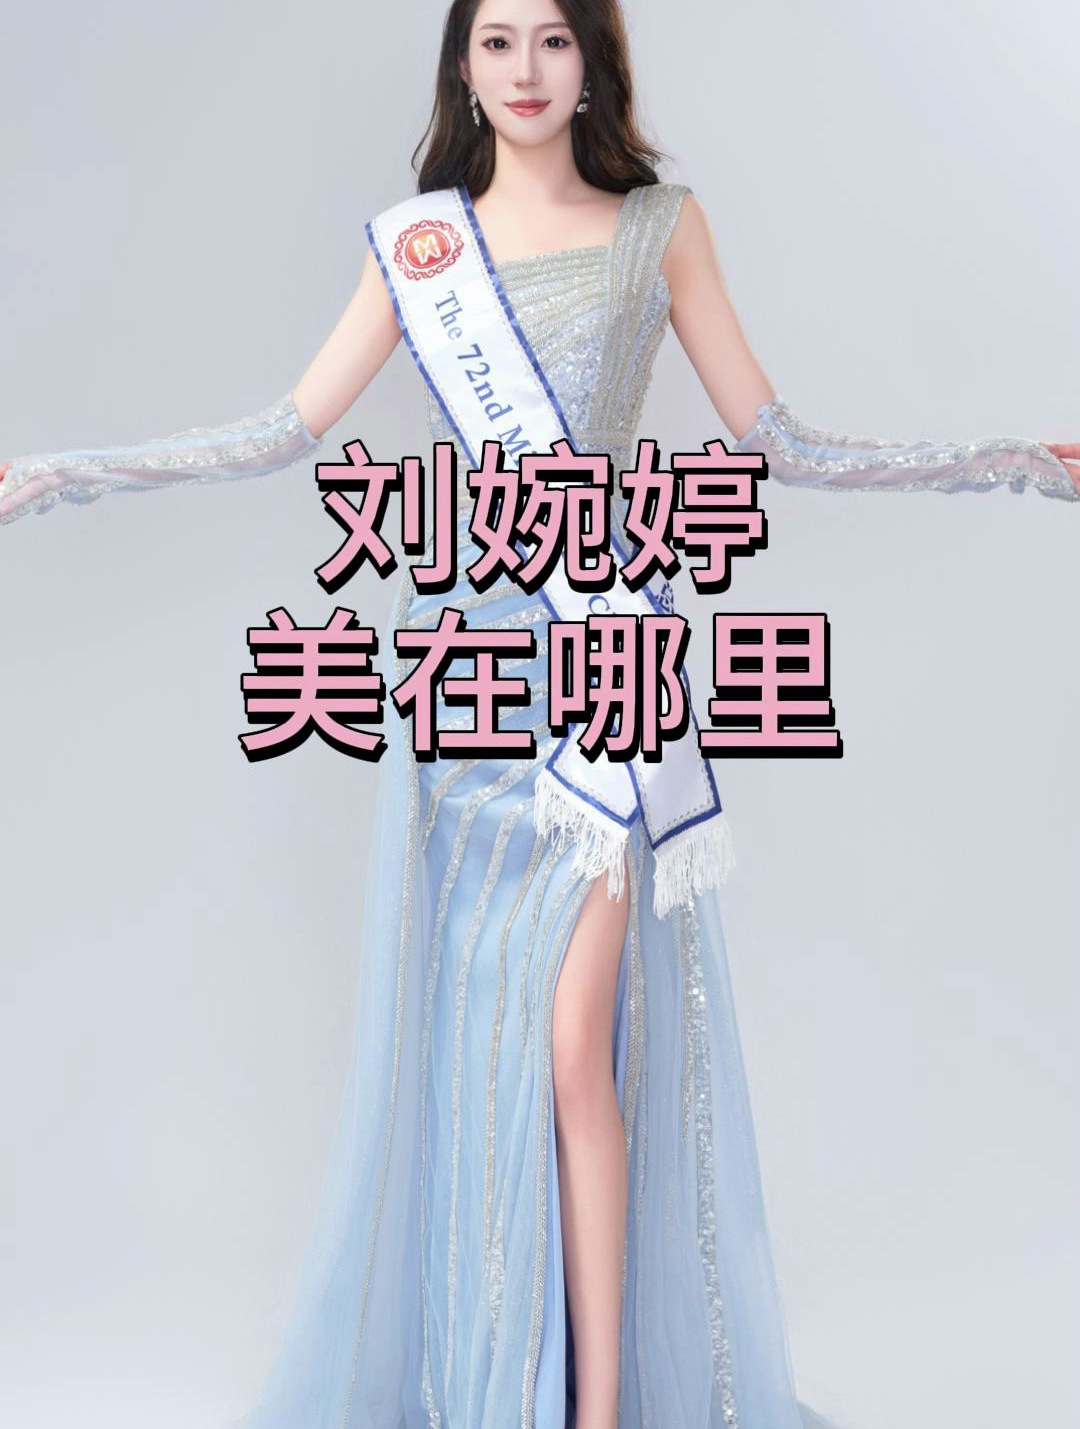 世界小姐中国赛区总冠军,刘婉婷,何以获此殊荣